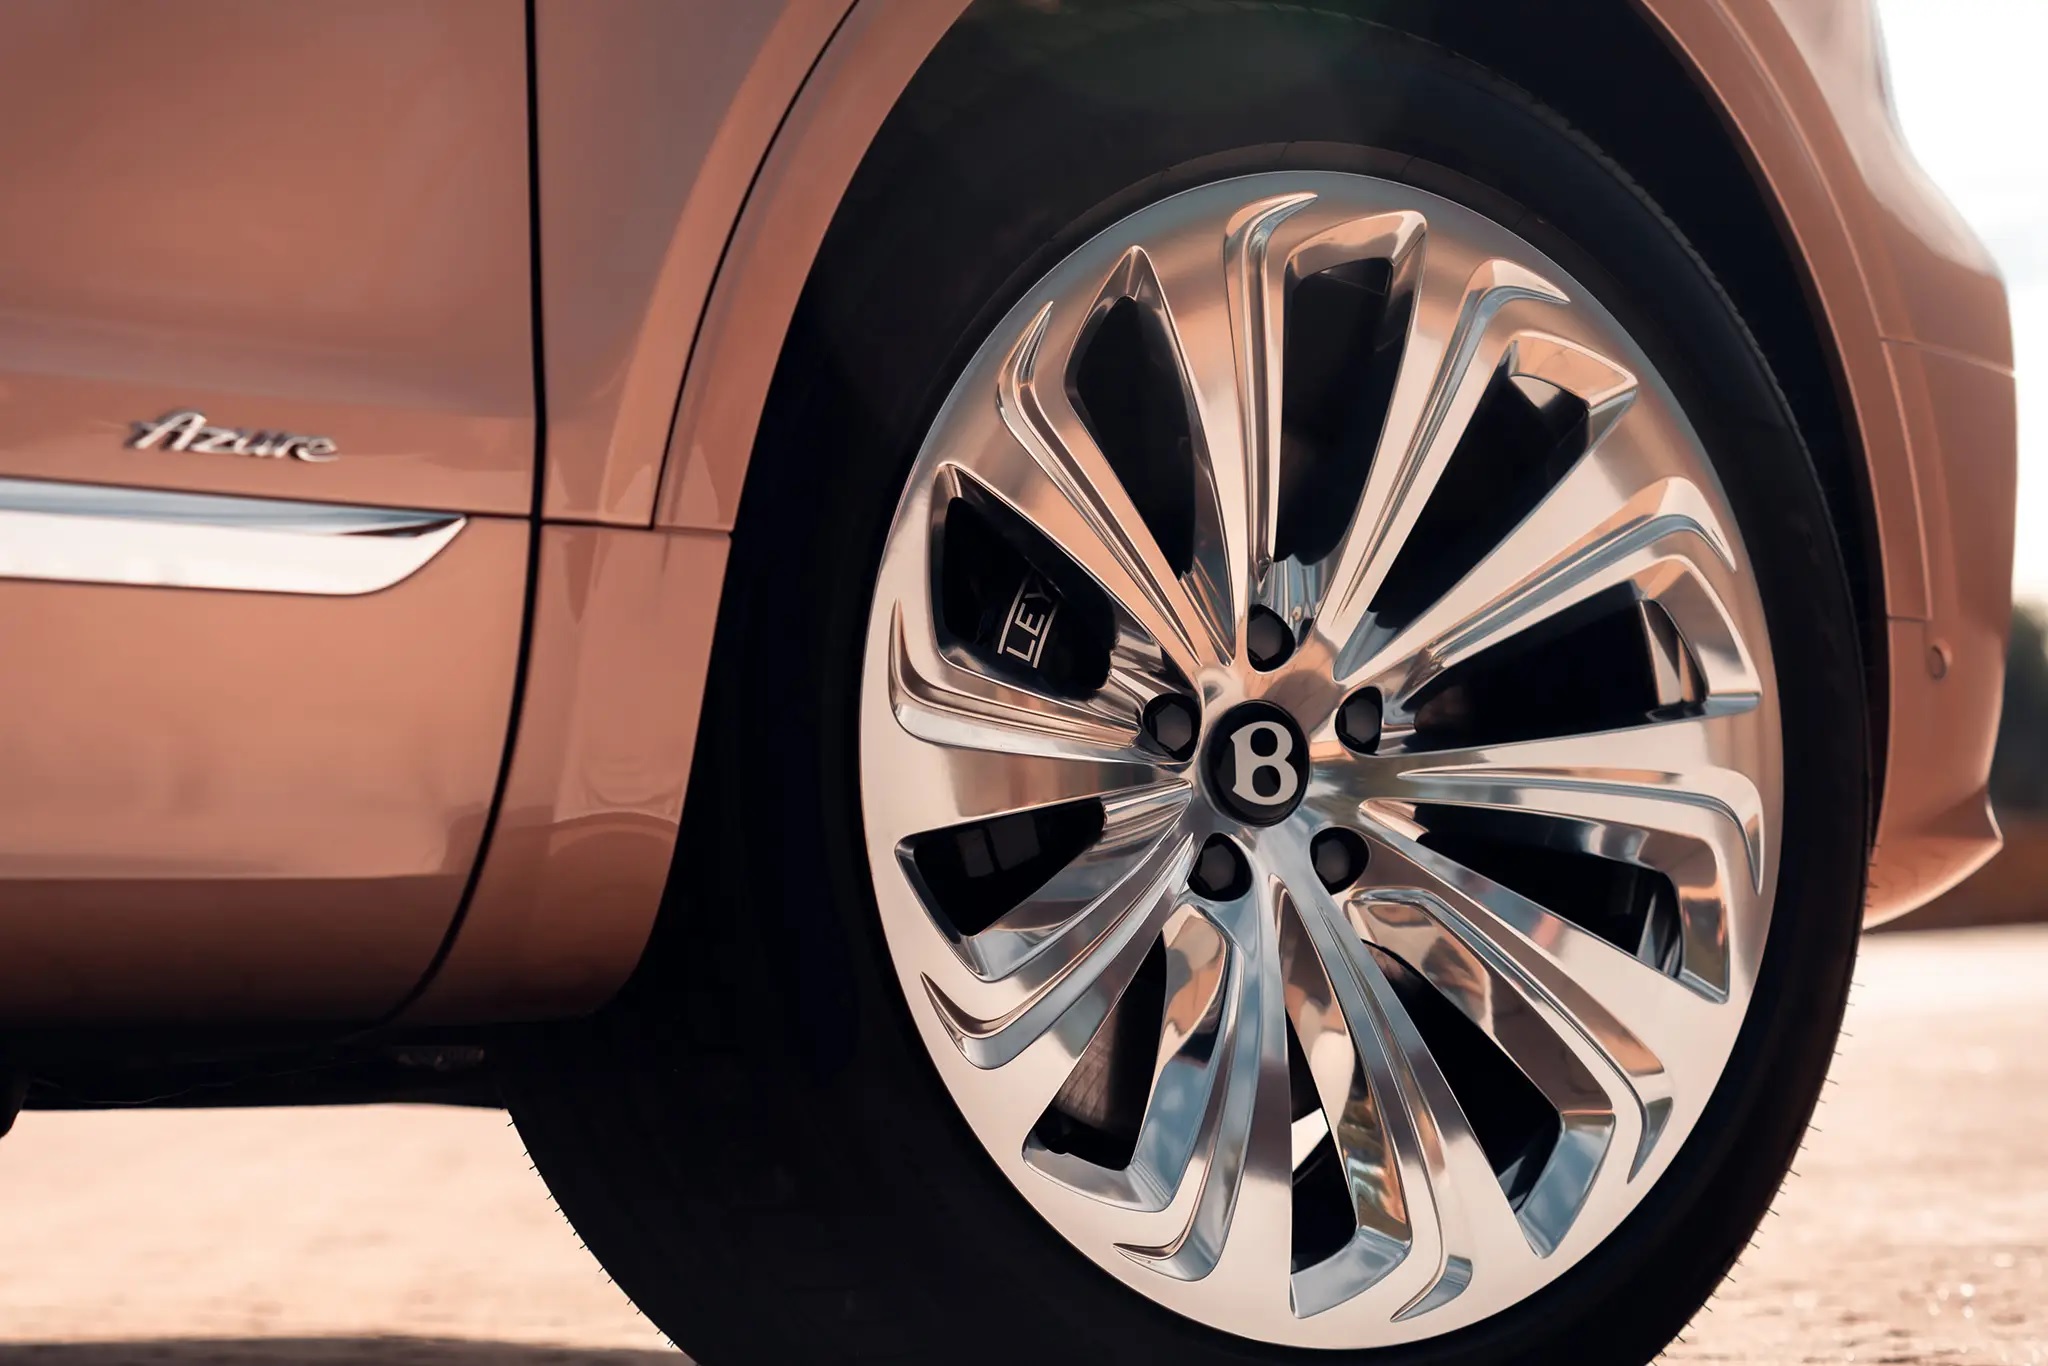 Bentley Bentayga bản trục cơ sở dài có mặt tại Hà Nội, giá từ 18,5 tỷ đồng bentley-bentayga-ewb-autodaily-3.jpg